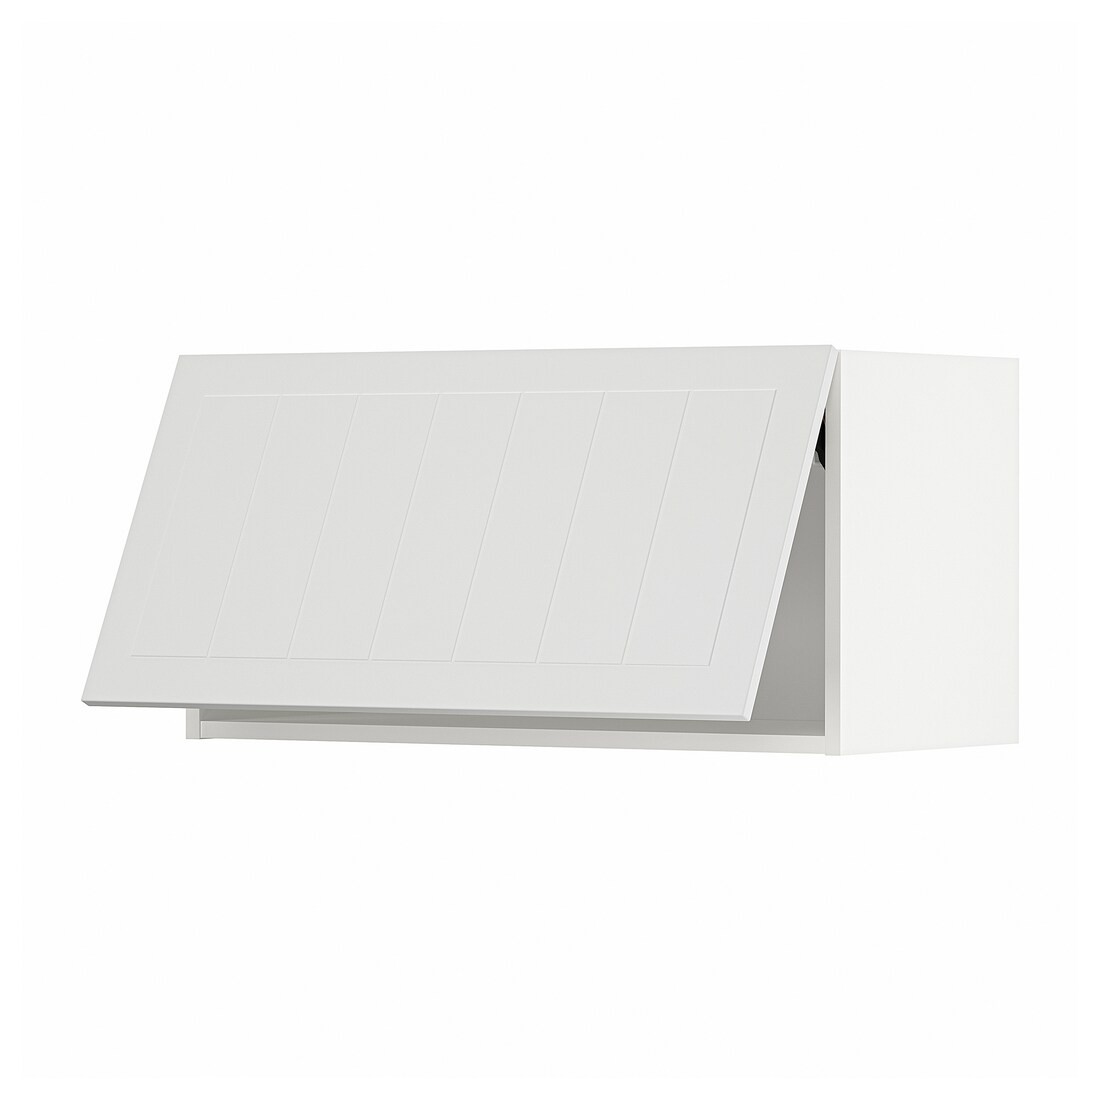 IKEA METOD МЕТОД Навесной горизонтальный шкаф, белый / Stensund белый, 80x40 см 59409252 | 594.092.52